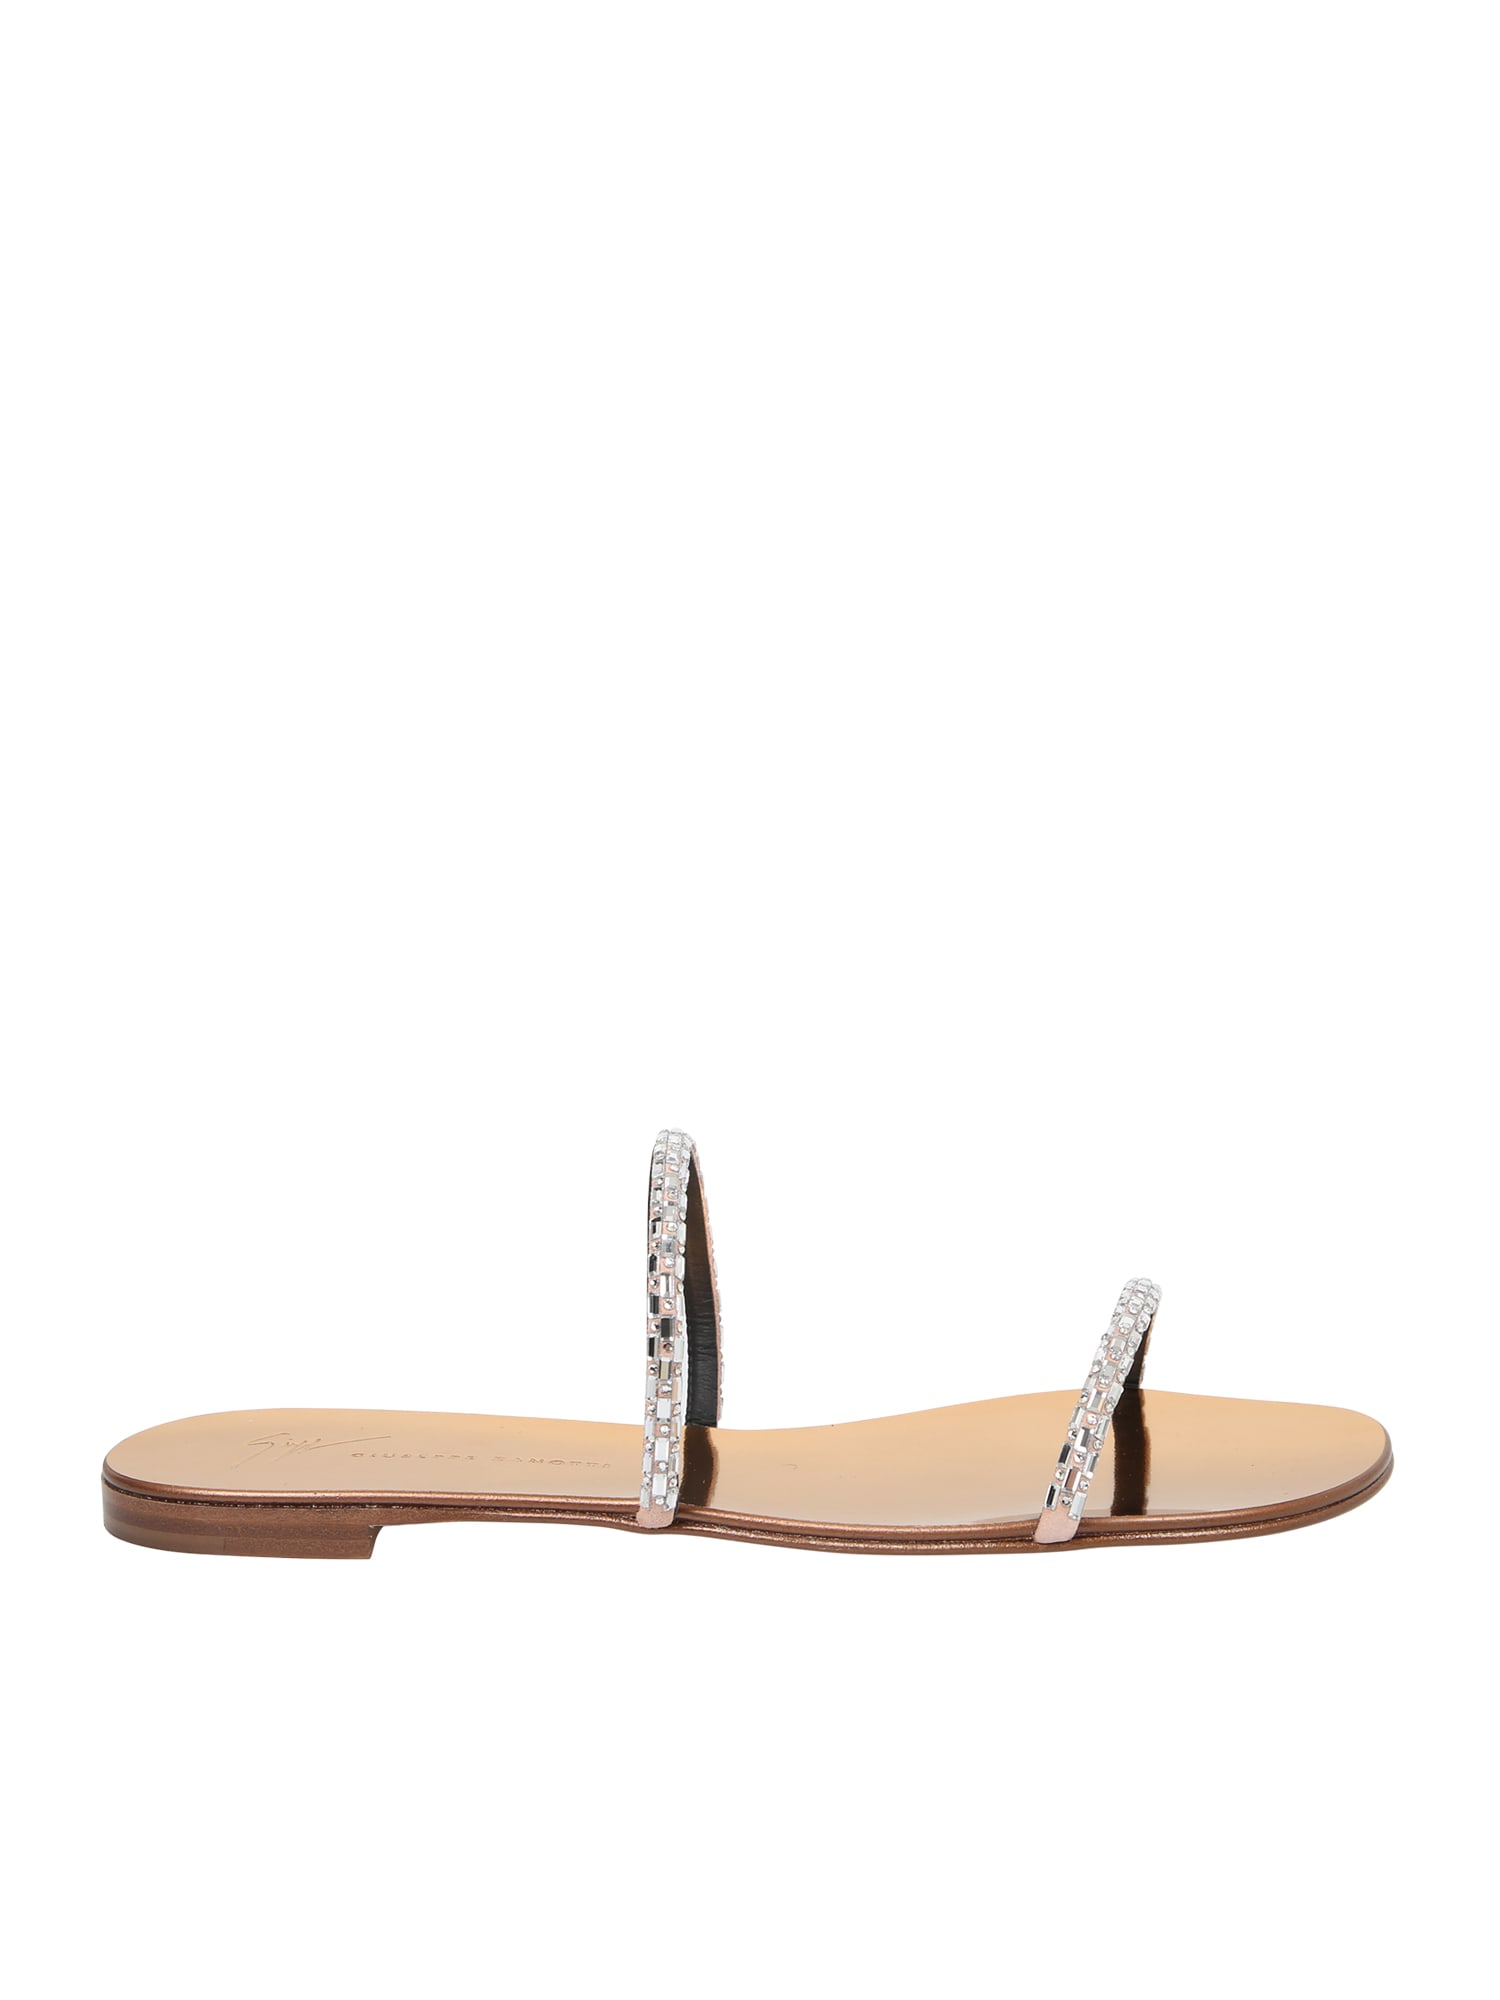 Giuseppe Zanotti Rhinestone-embellished Sandals